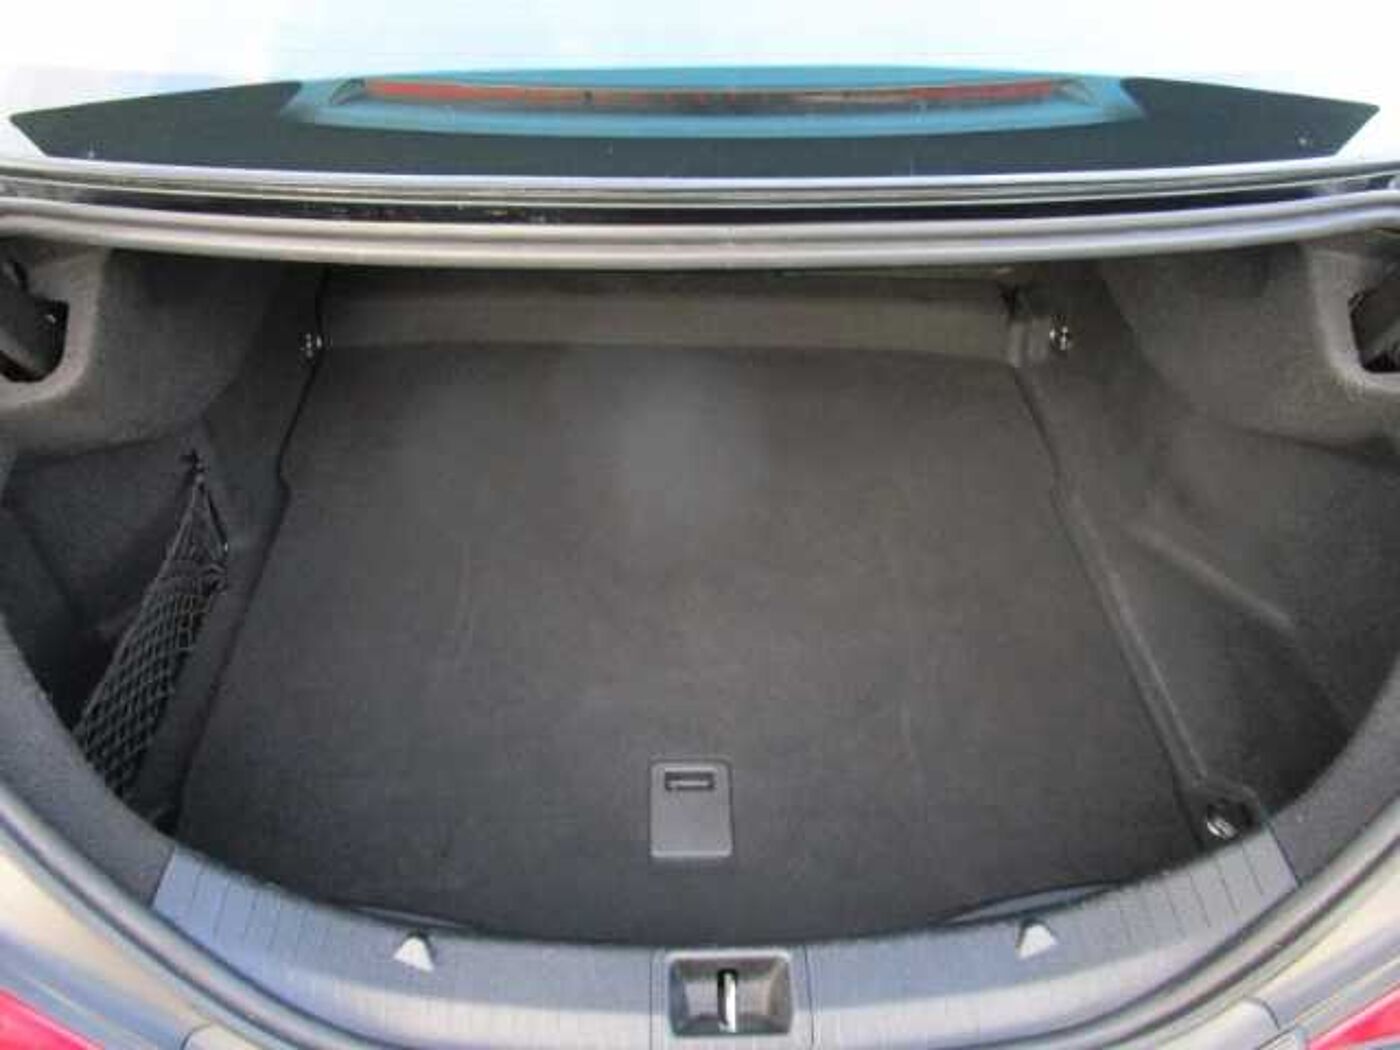 Mercedes-Benz  A -Klasse Klimaautom Fahrerprofil Kom-paket Musikstreaming SHZ Keyless